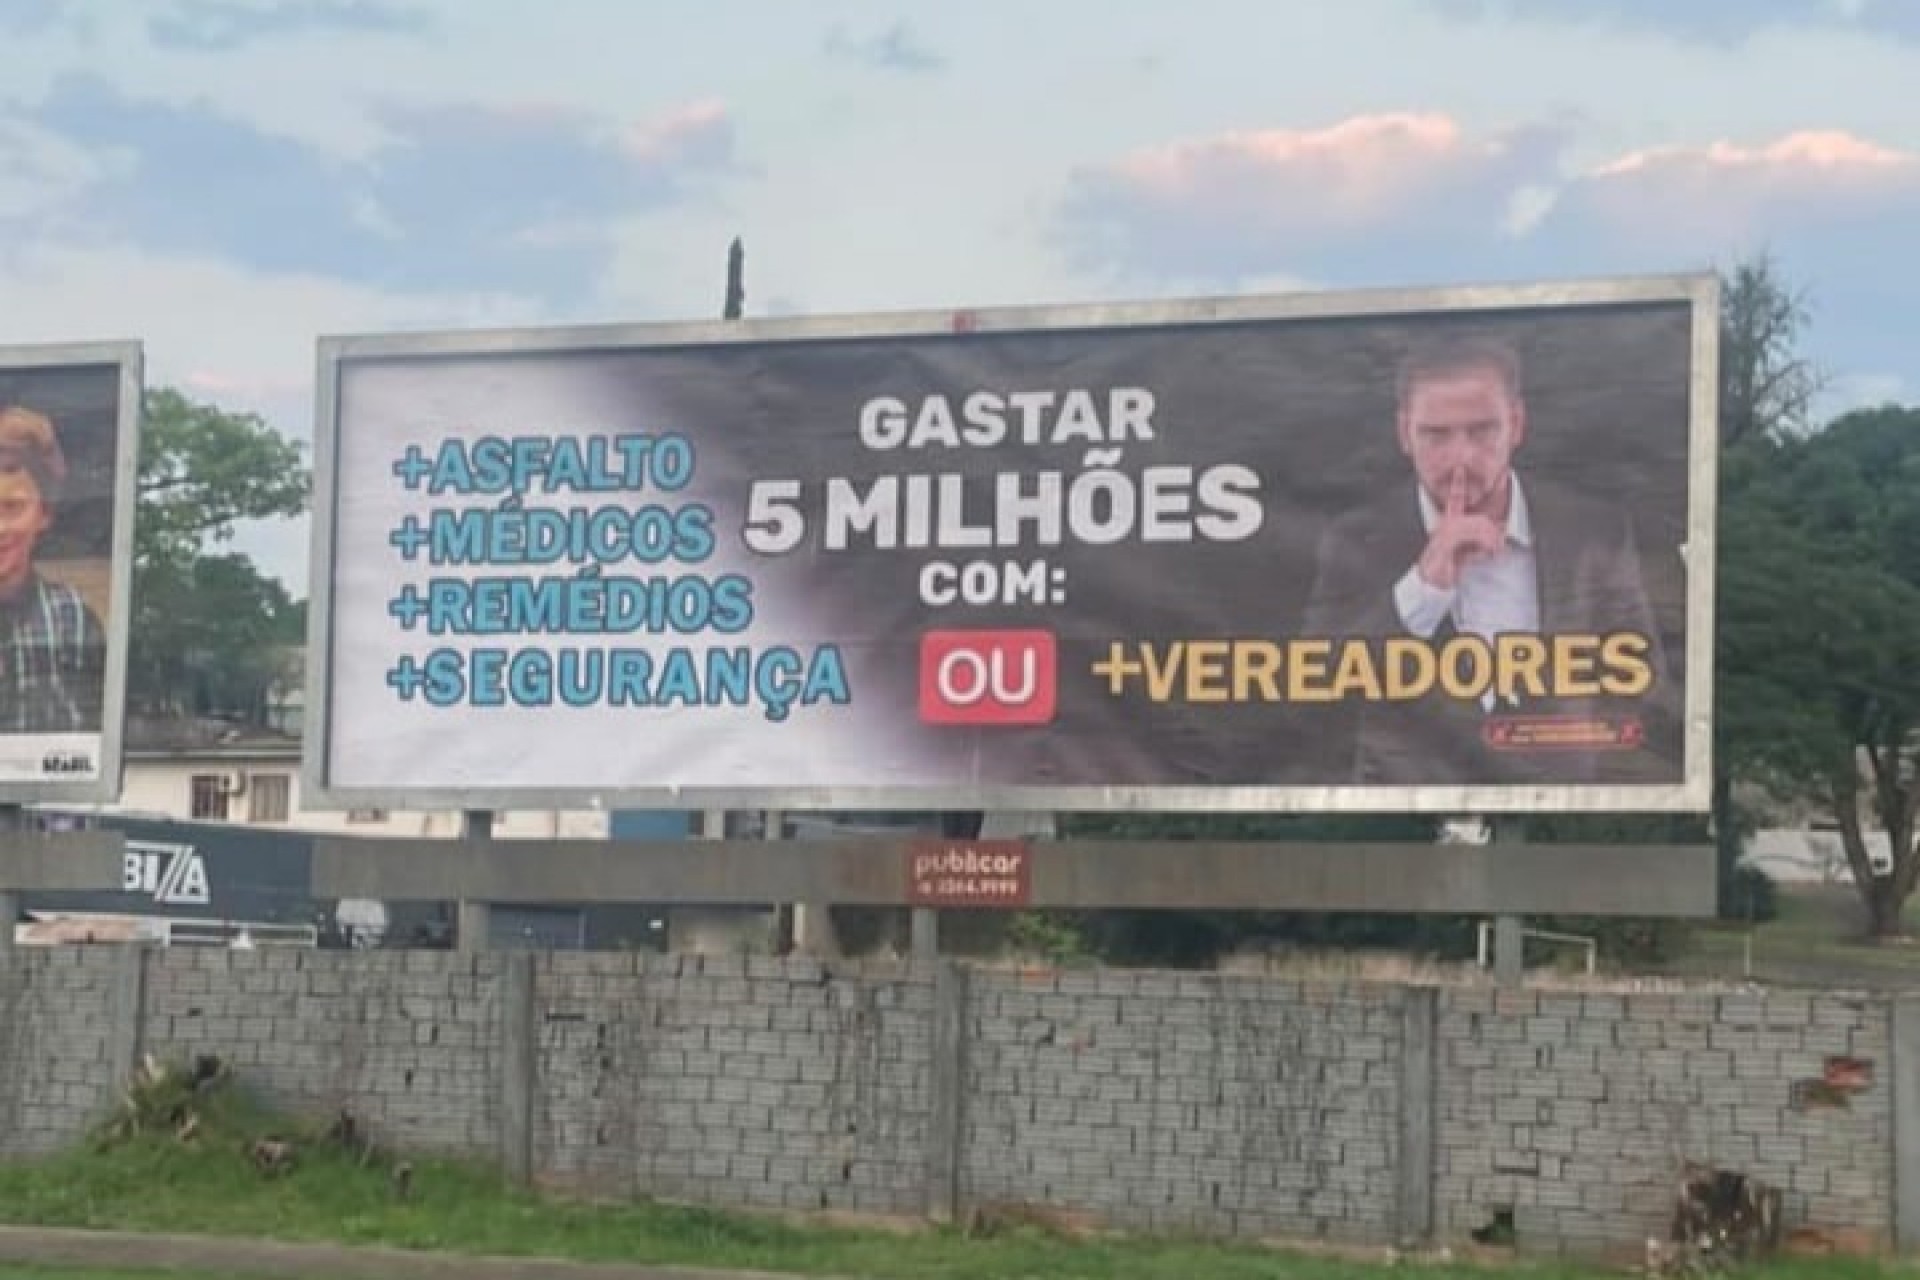 Outdoors contra o projeto que prevê o aumento do número de vereadores em Medianeira geram polêmica